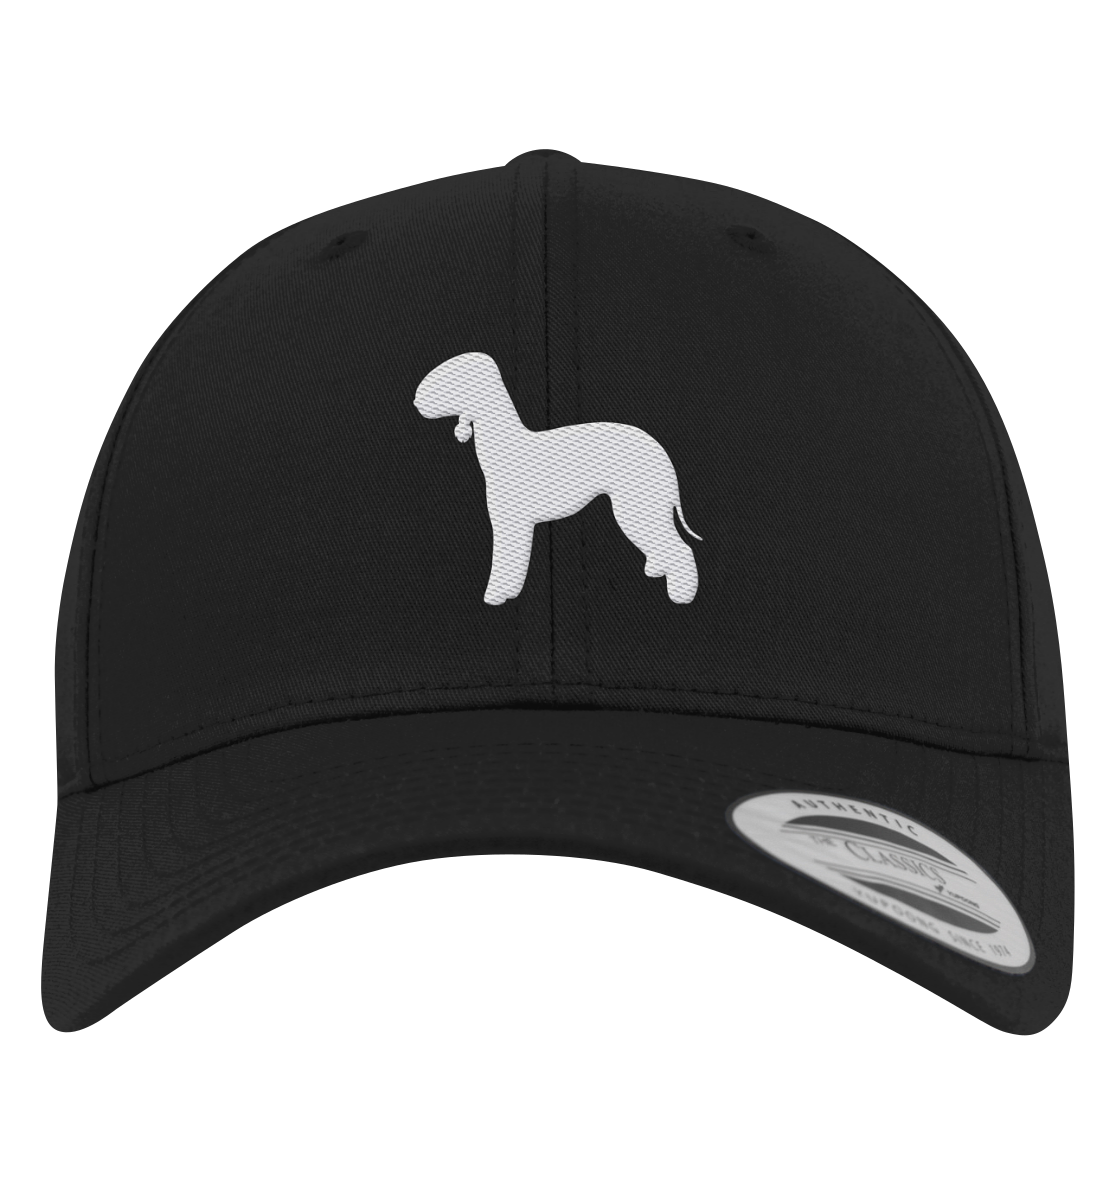 Bedlington Terrier-Silhouette - Premium Baseball Cap